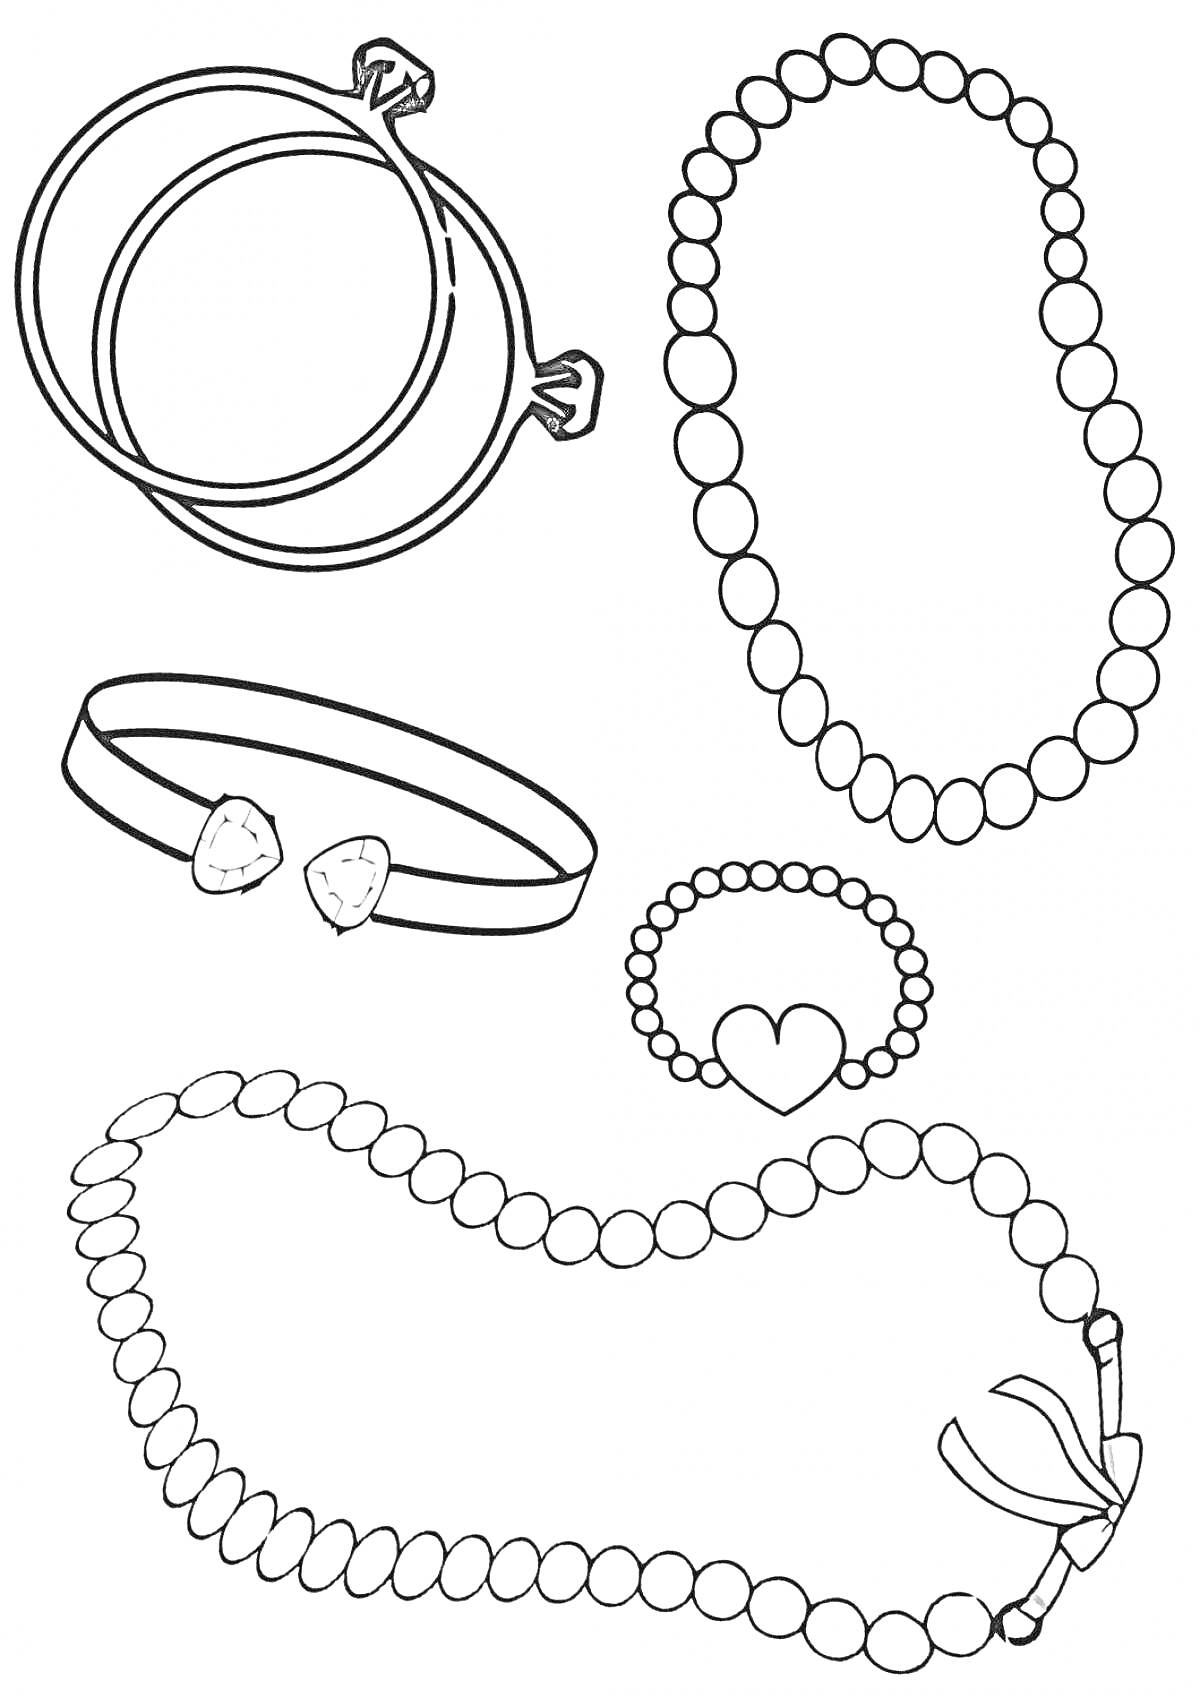 Раскраска Два браслета с замками, ожерелье с бусинами, браслет с двумя камнями, браслет с сердцем, бусинчатый браслет с бантом